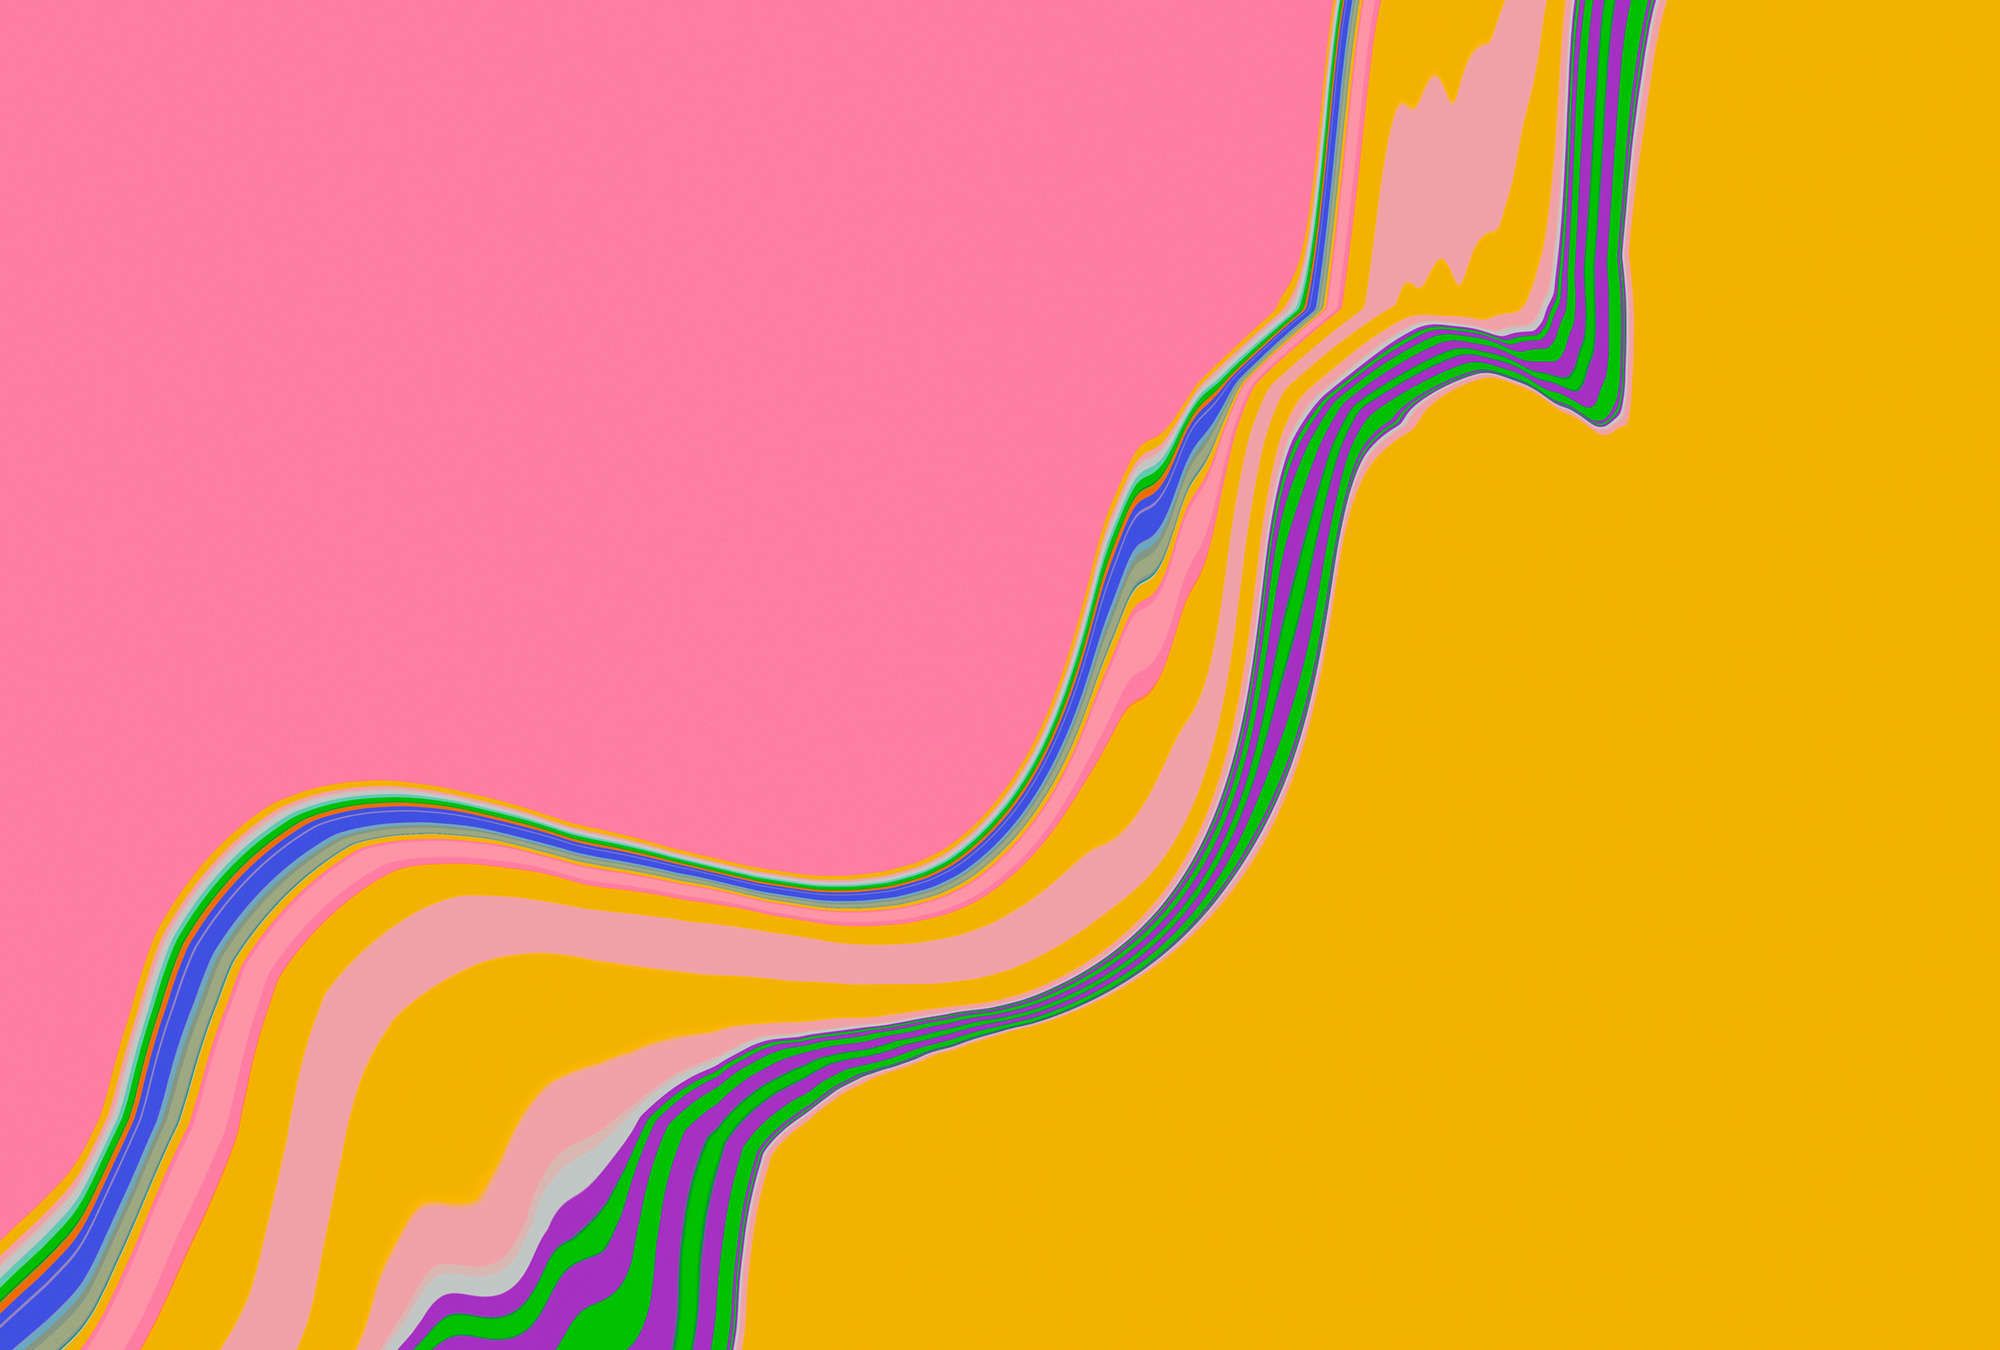             papier peint en papier panoramique »nexus« - Style abstrait de vagues - rose, orange | Intissé lisse, légèrement nacré
        